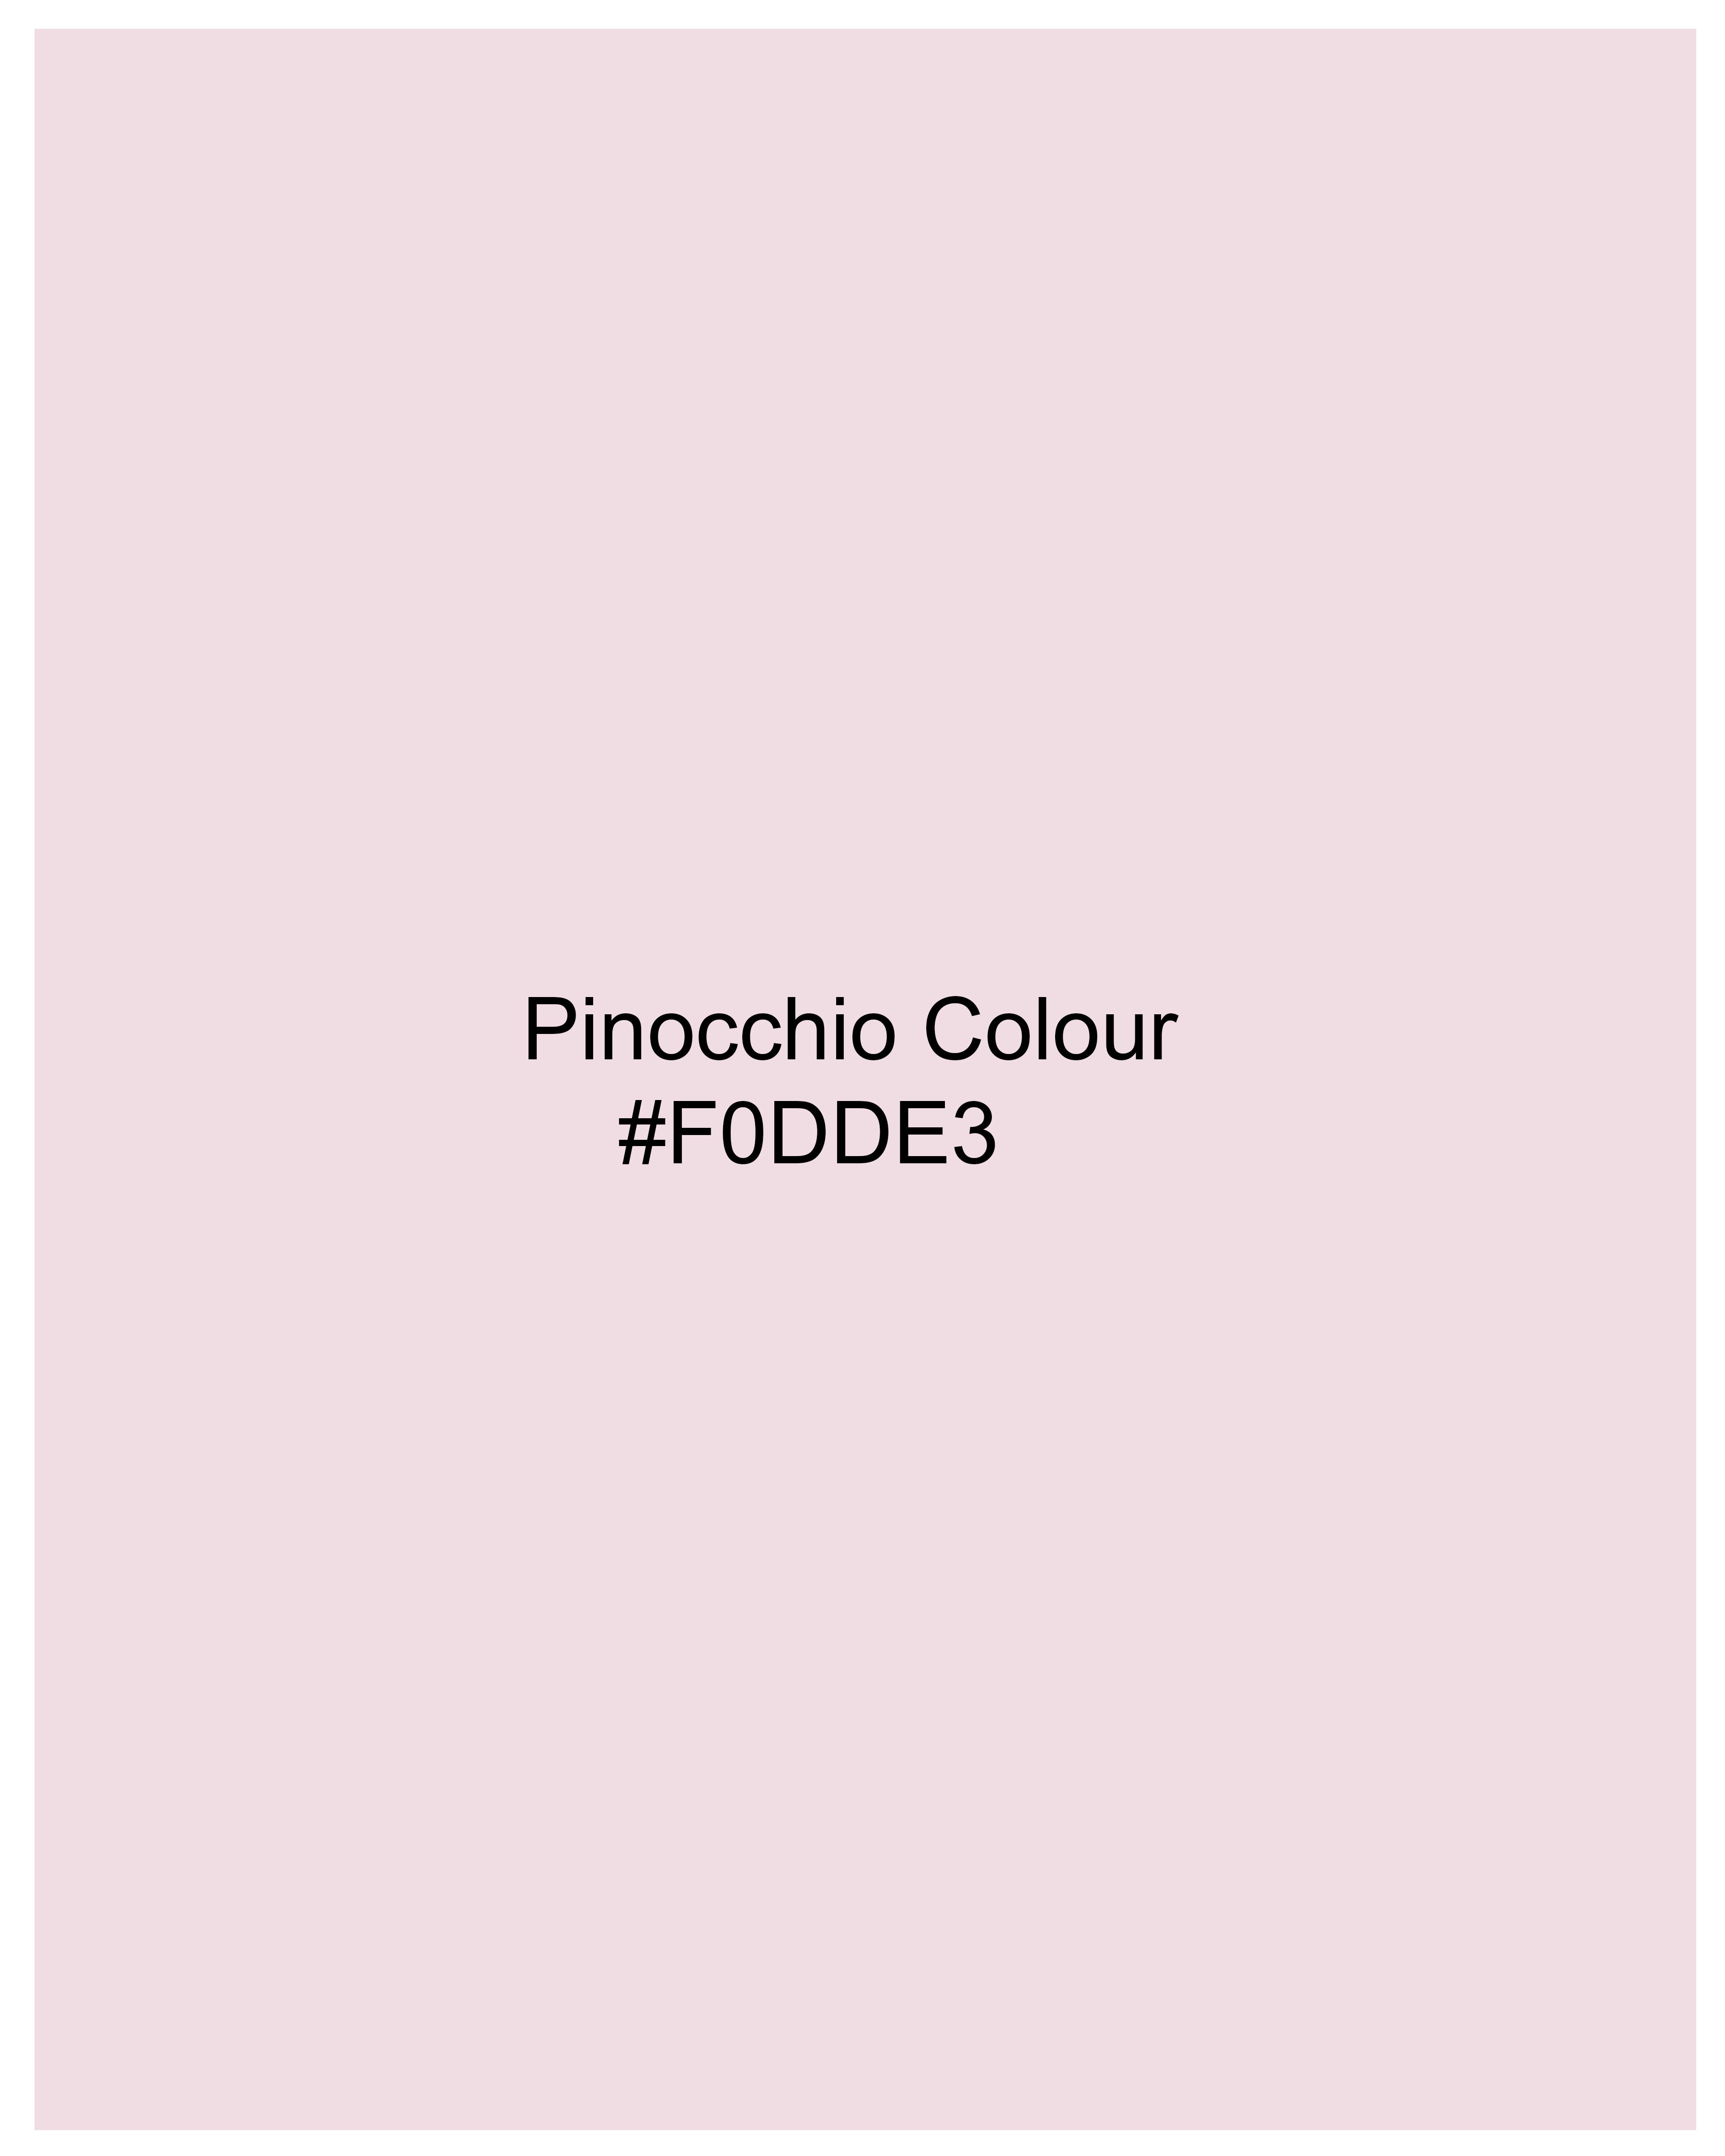 Pinocchio Pink Printed Super Soft Premium Cotton Shirt 9397-BD-38, 9397-BD-H-38, 9397-BD-39, 9397-BD-H-39, 9397-BD-40, 9397-BD-H-40, 9397-BD-42, 9397-BD-H-42, 9397-BD-44, 9397-BD-H-44, 9397-BD-46, 9397-BD-H-46, 9397-BD-48, 9397-BD-H-48, 9397-BD-50, 9397-BD-H-50, 9397-BD-52, 9397-BD-H-52